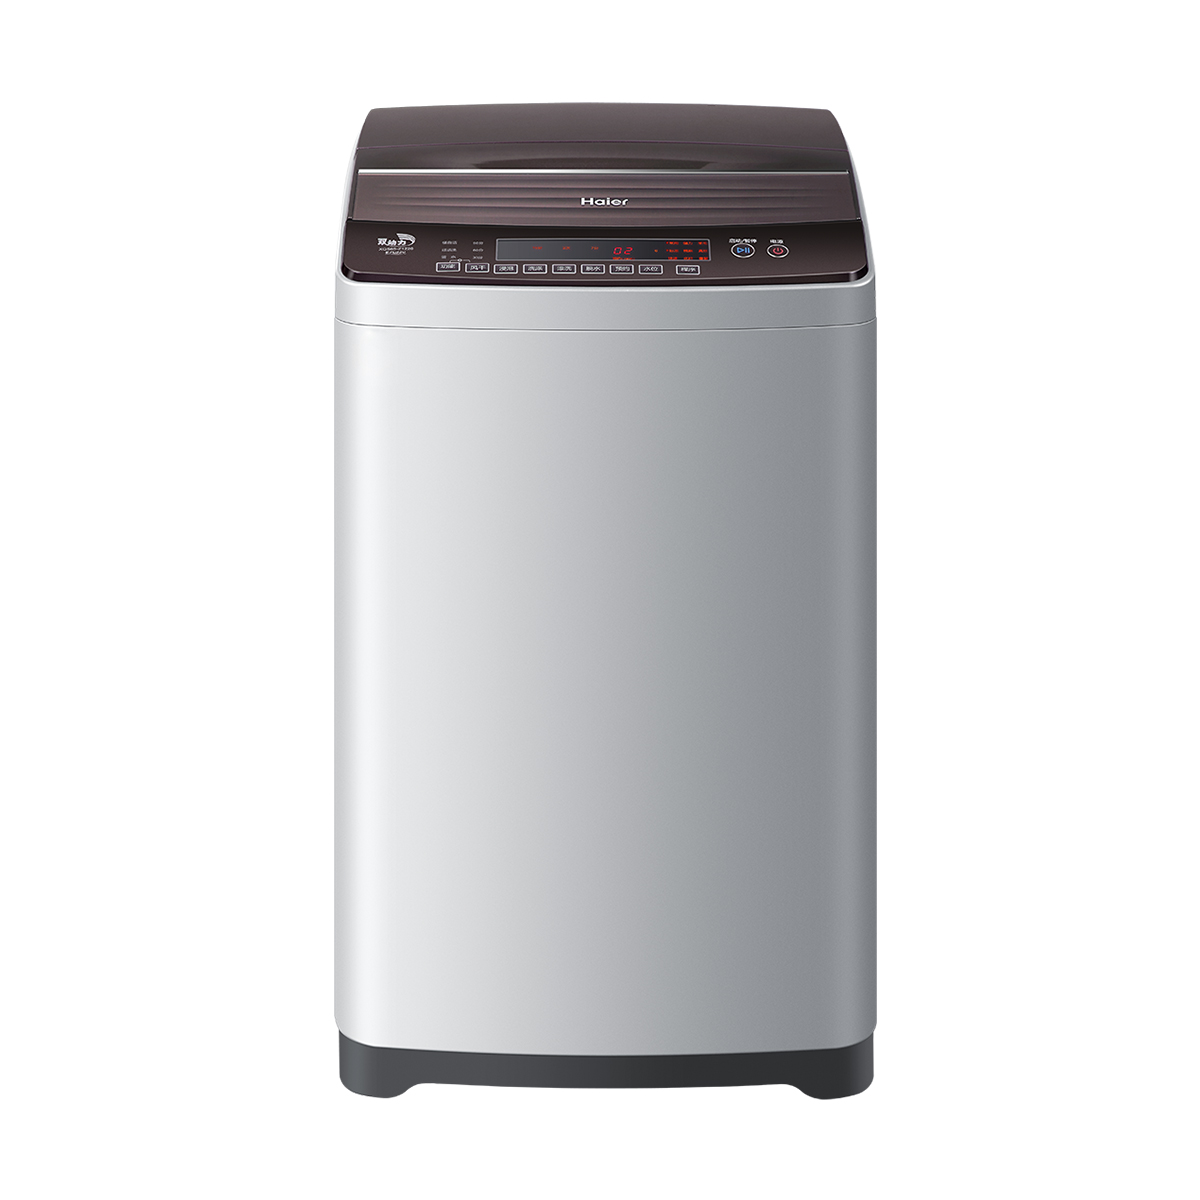 海尔Haier洗衣机 XQS65-Z1226 说明书